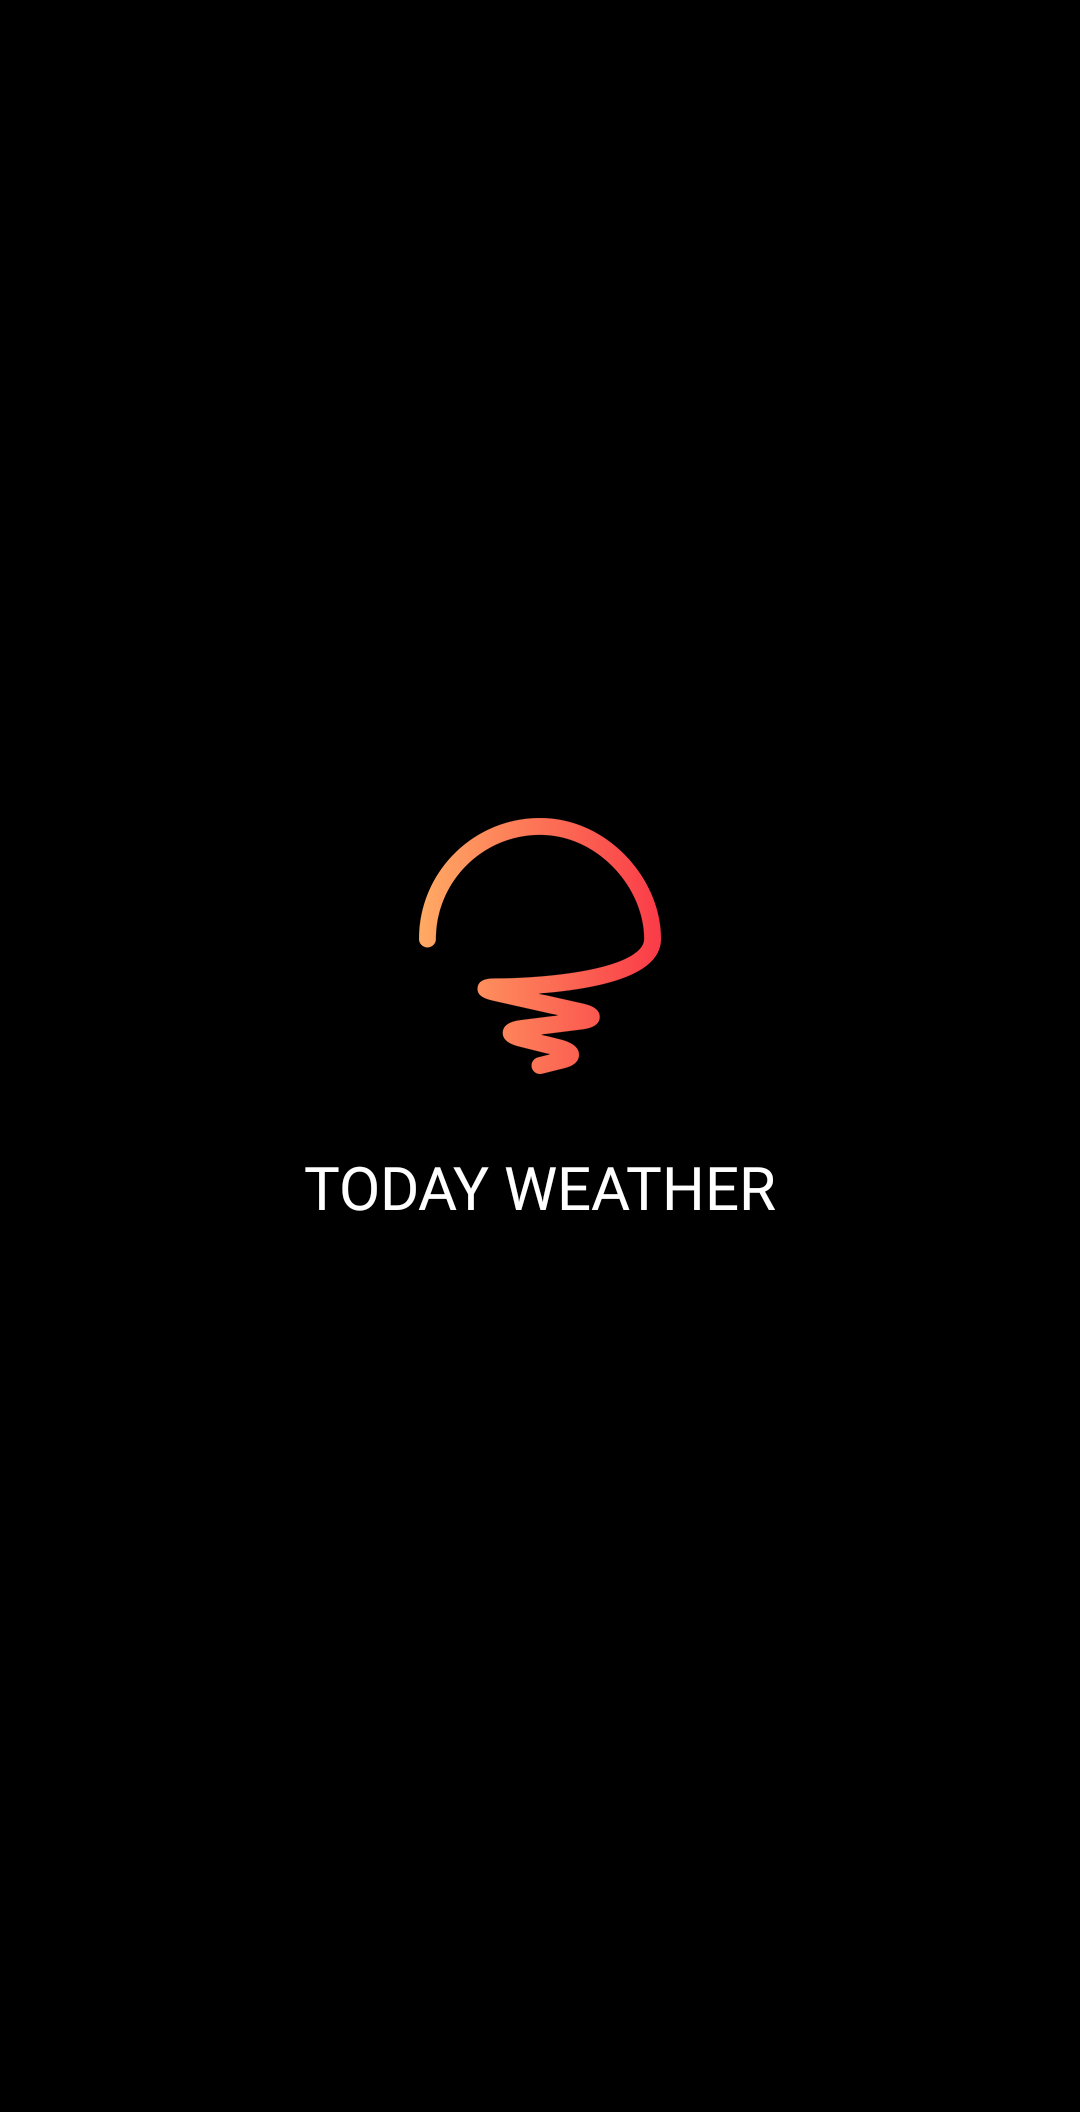 Sforum - Trang thông tin công nghệ mới nhất Screenshot_2021-12-11-11-00-22-50 Today Weather: Ứng dụng dự báo thời tiết toàn cầu 